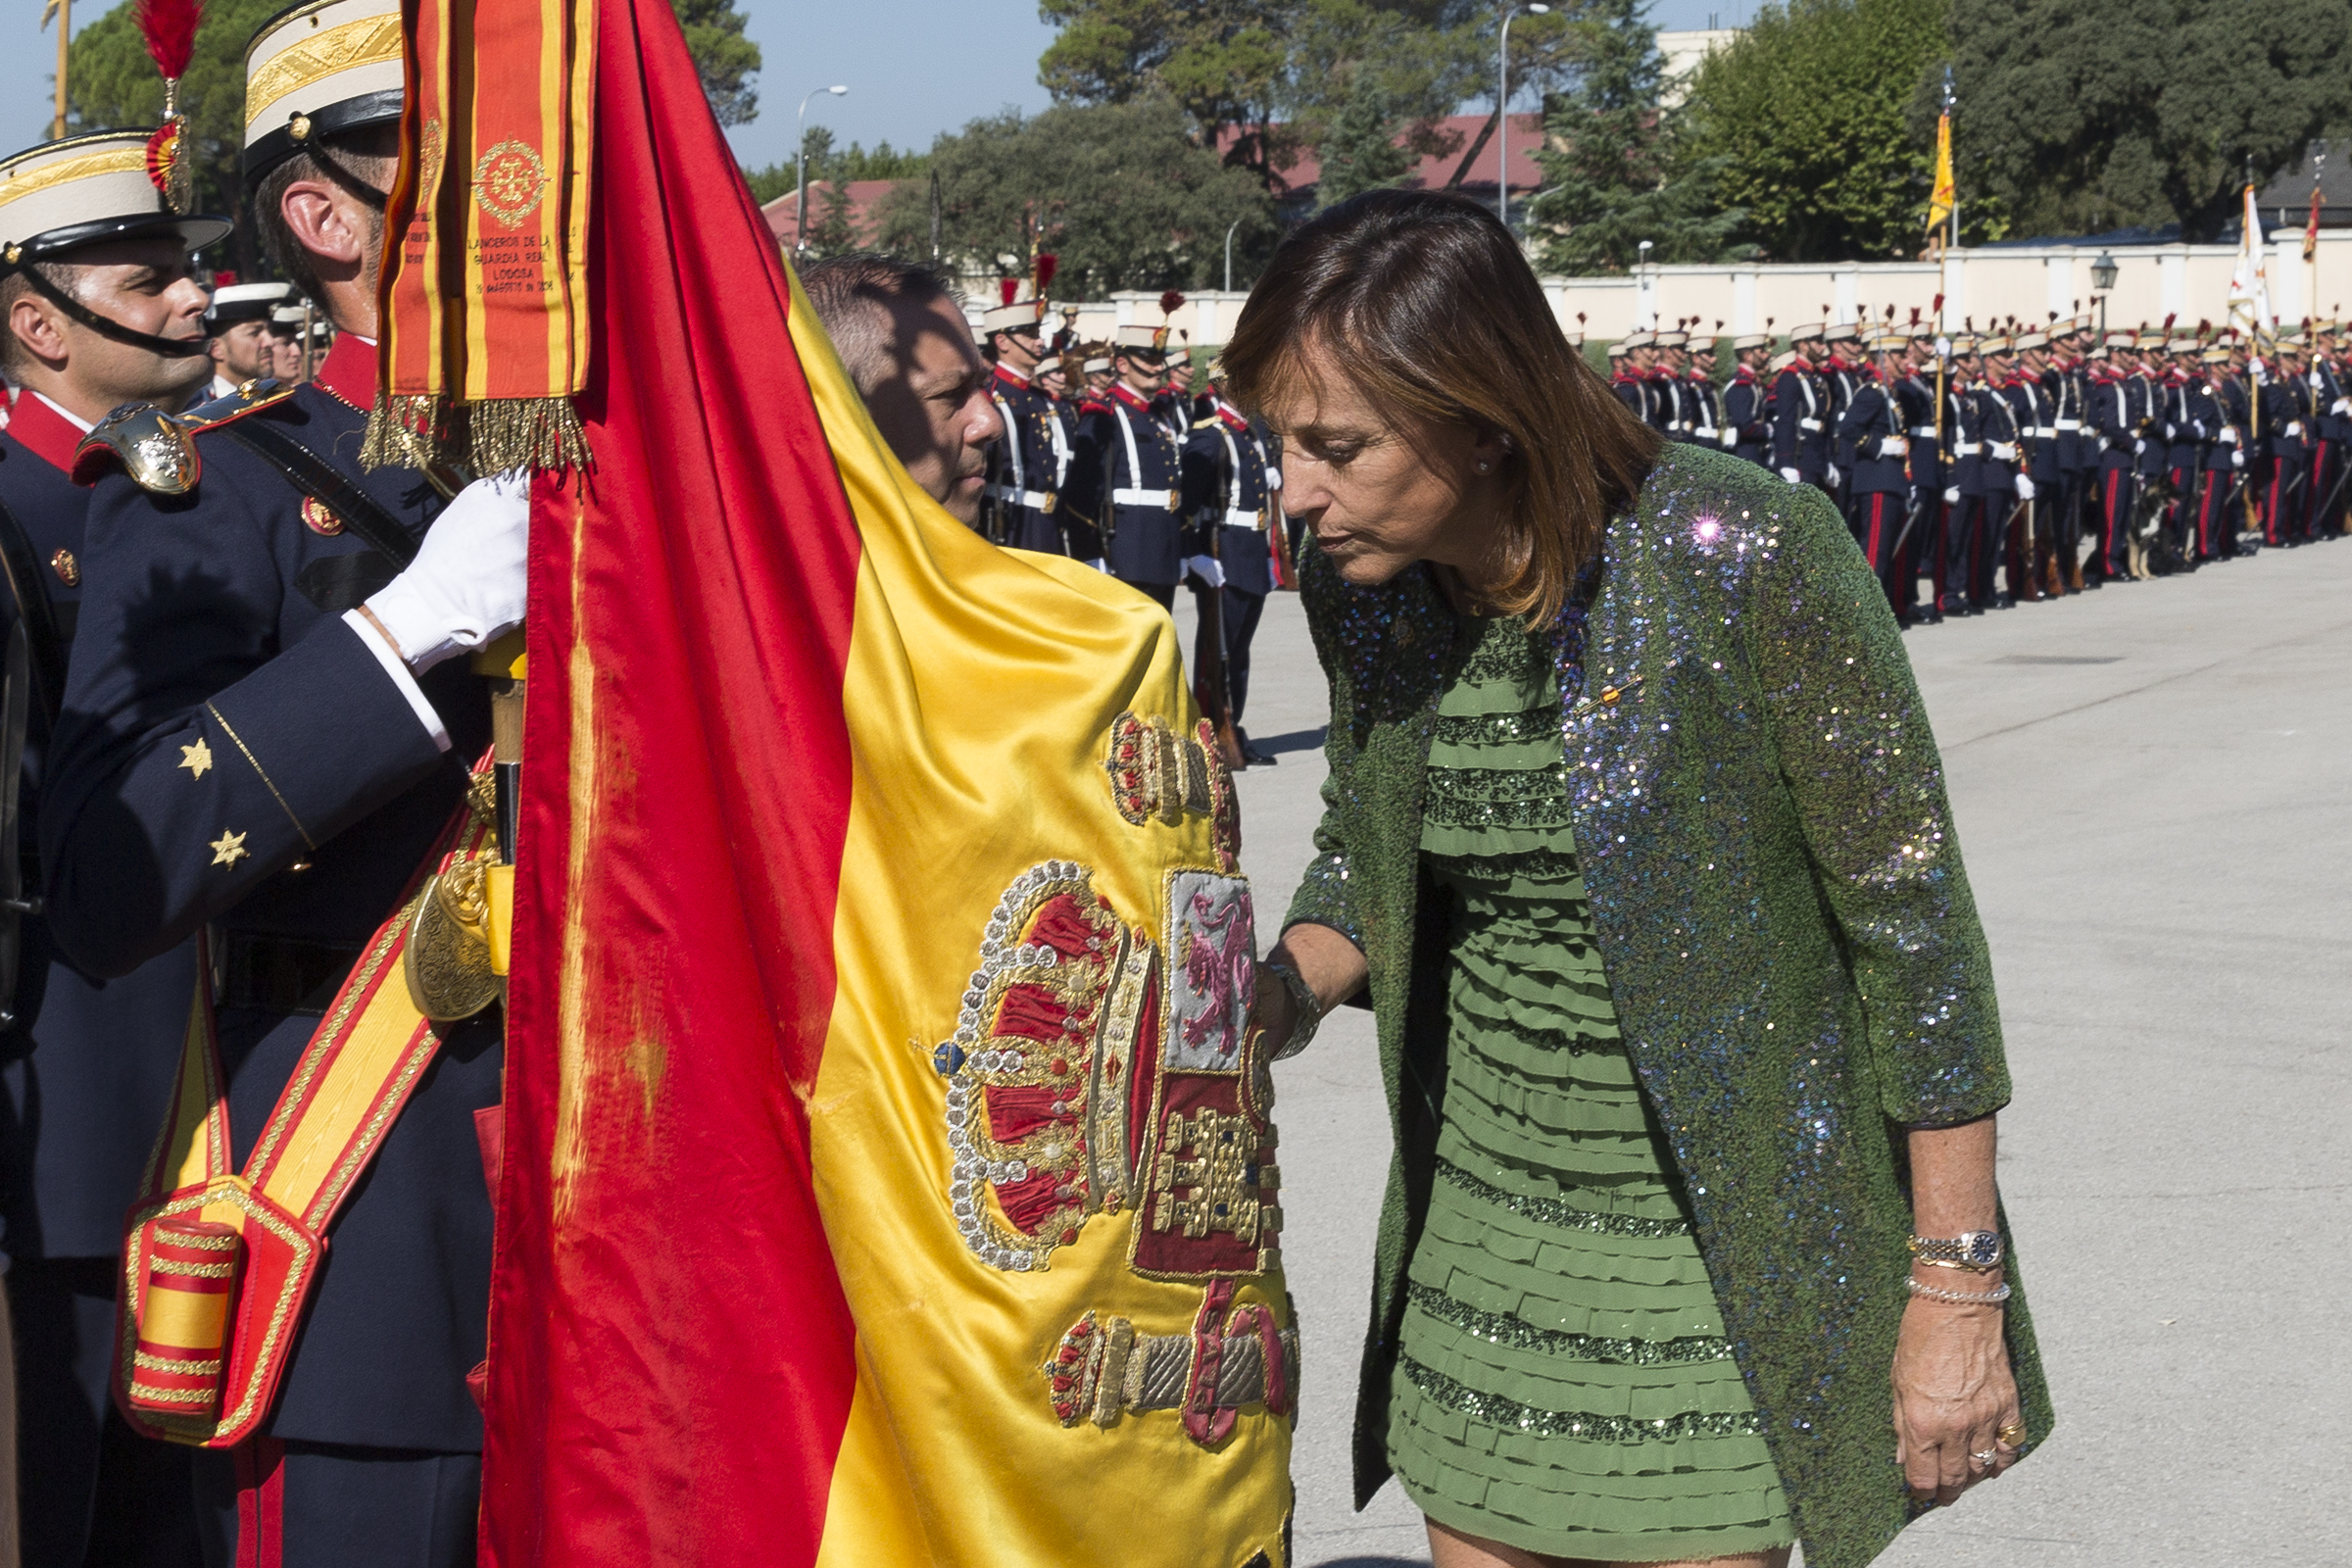 Jurando besando la bandera de España de la Guardia Real